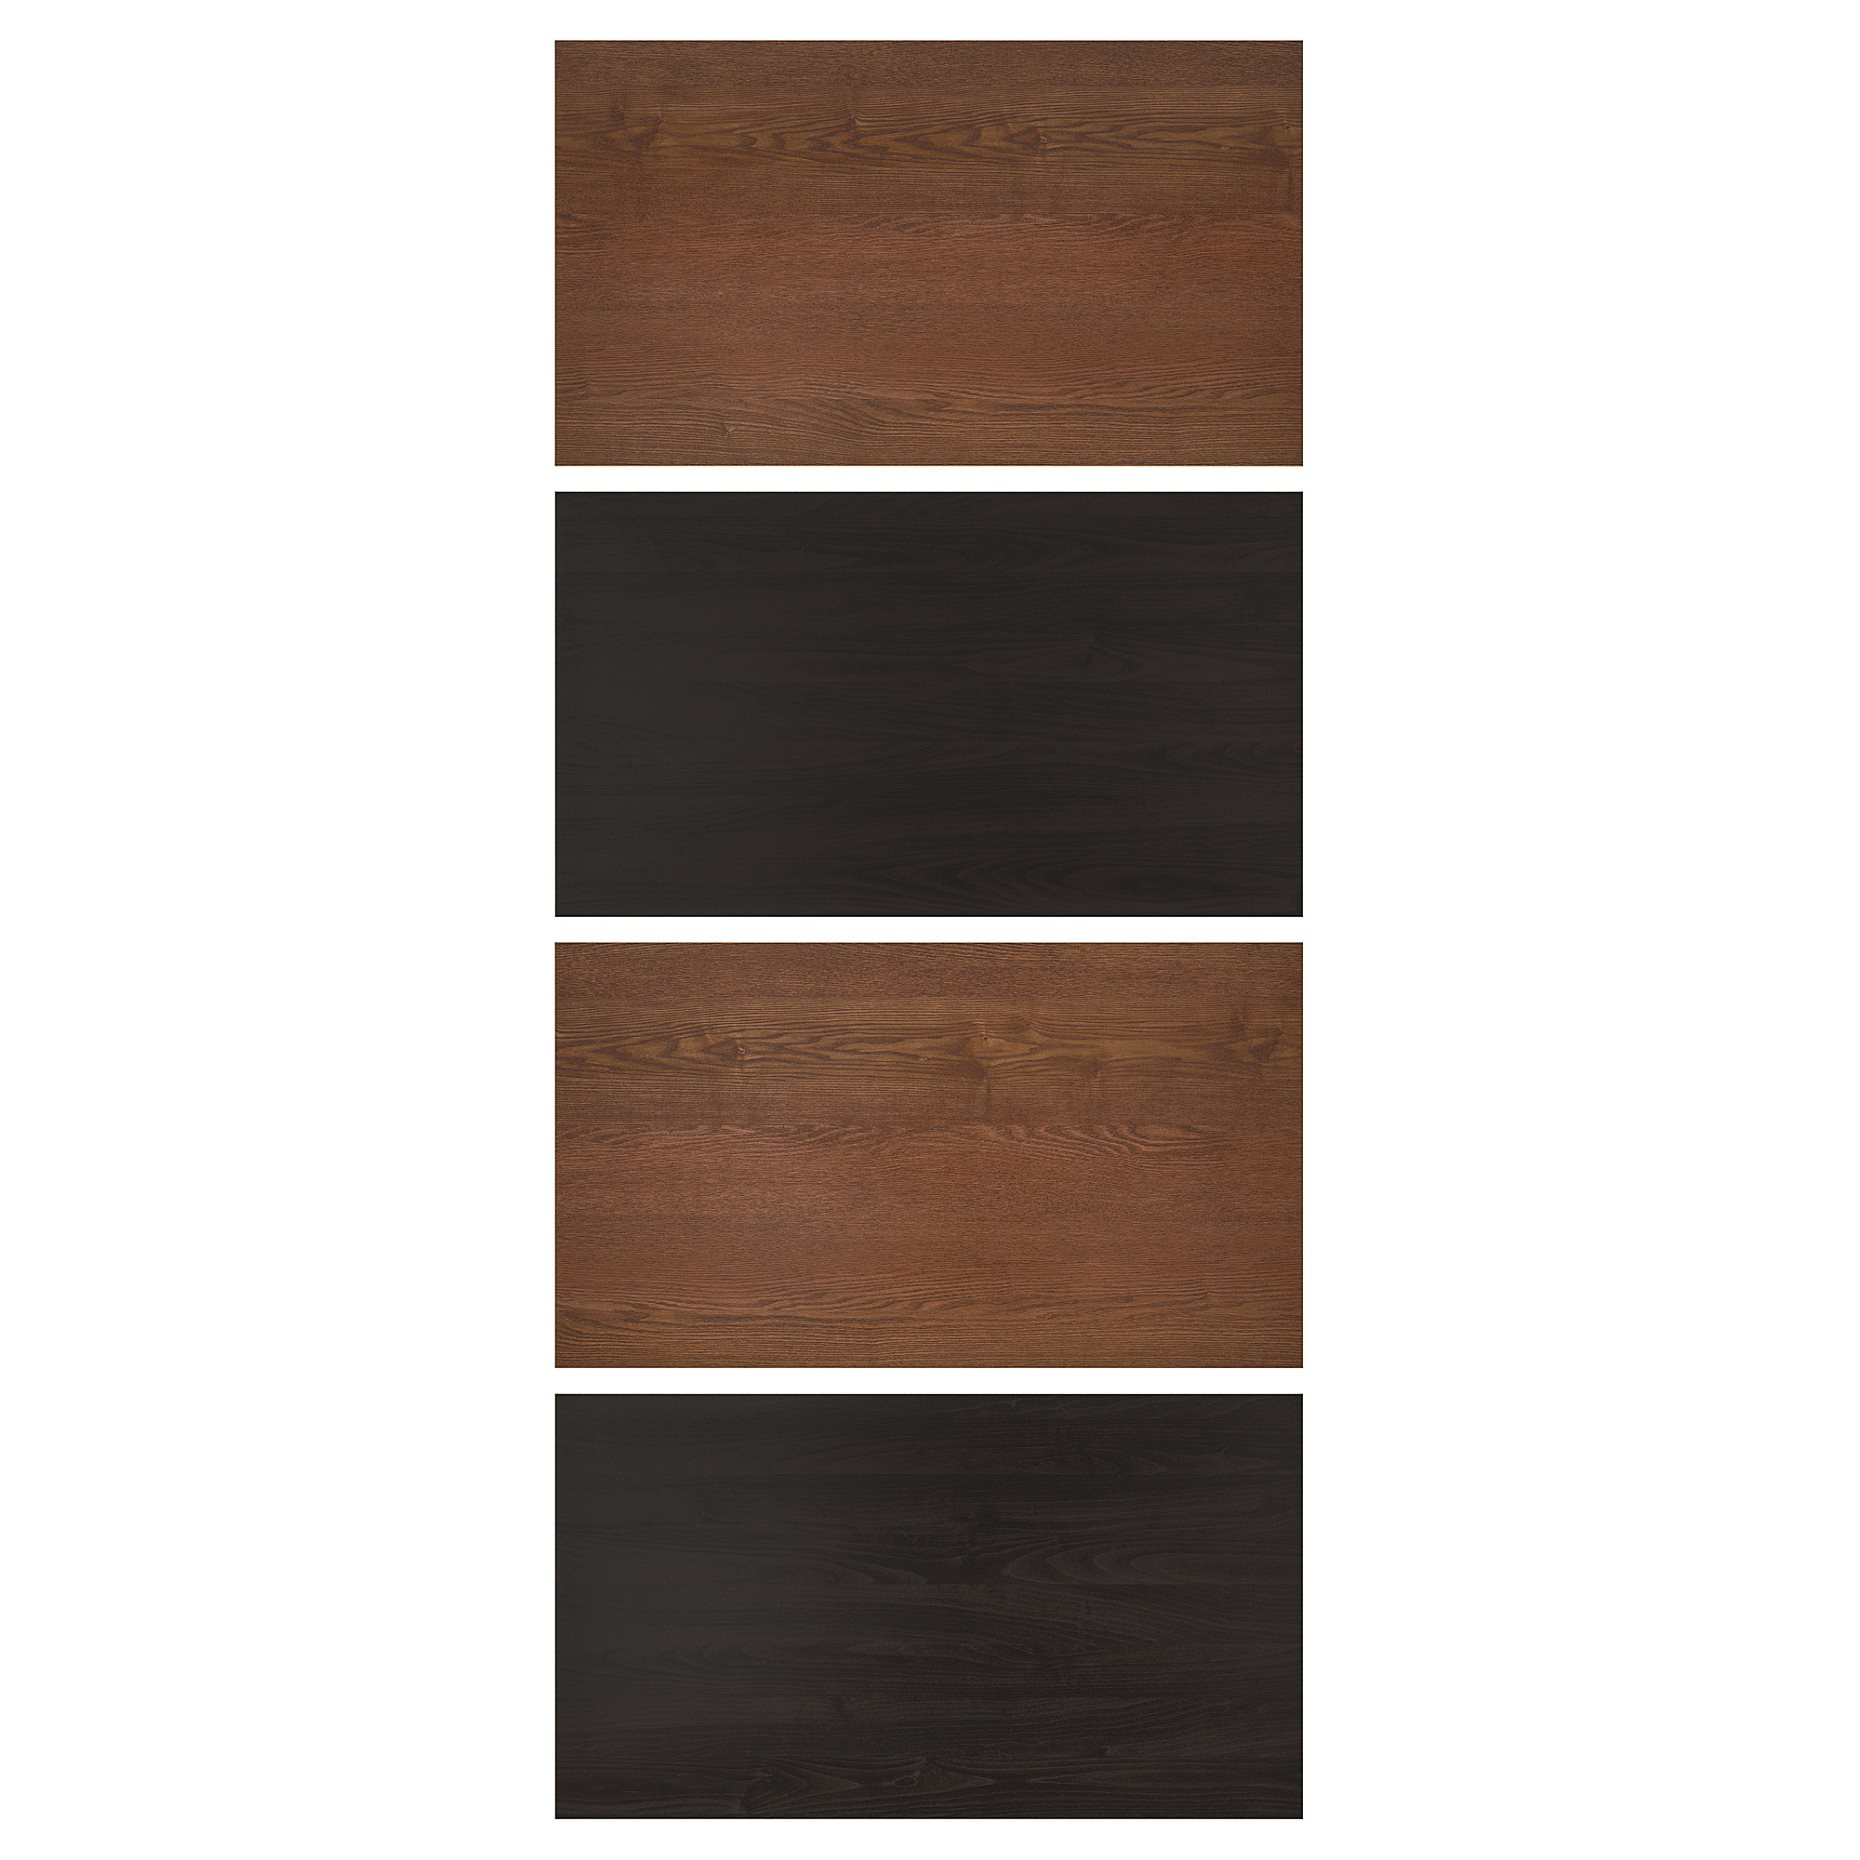 MEHAMN, 4 panels for sliding door frame, 004.211.90